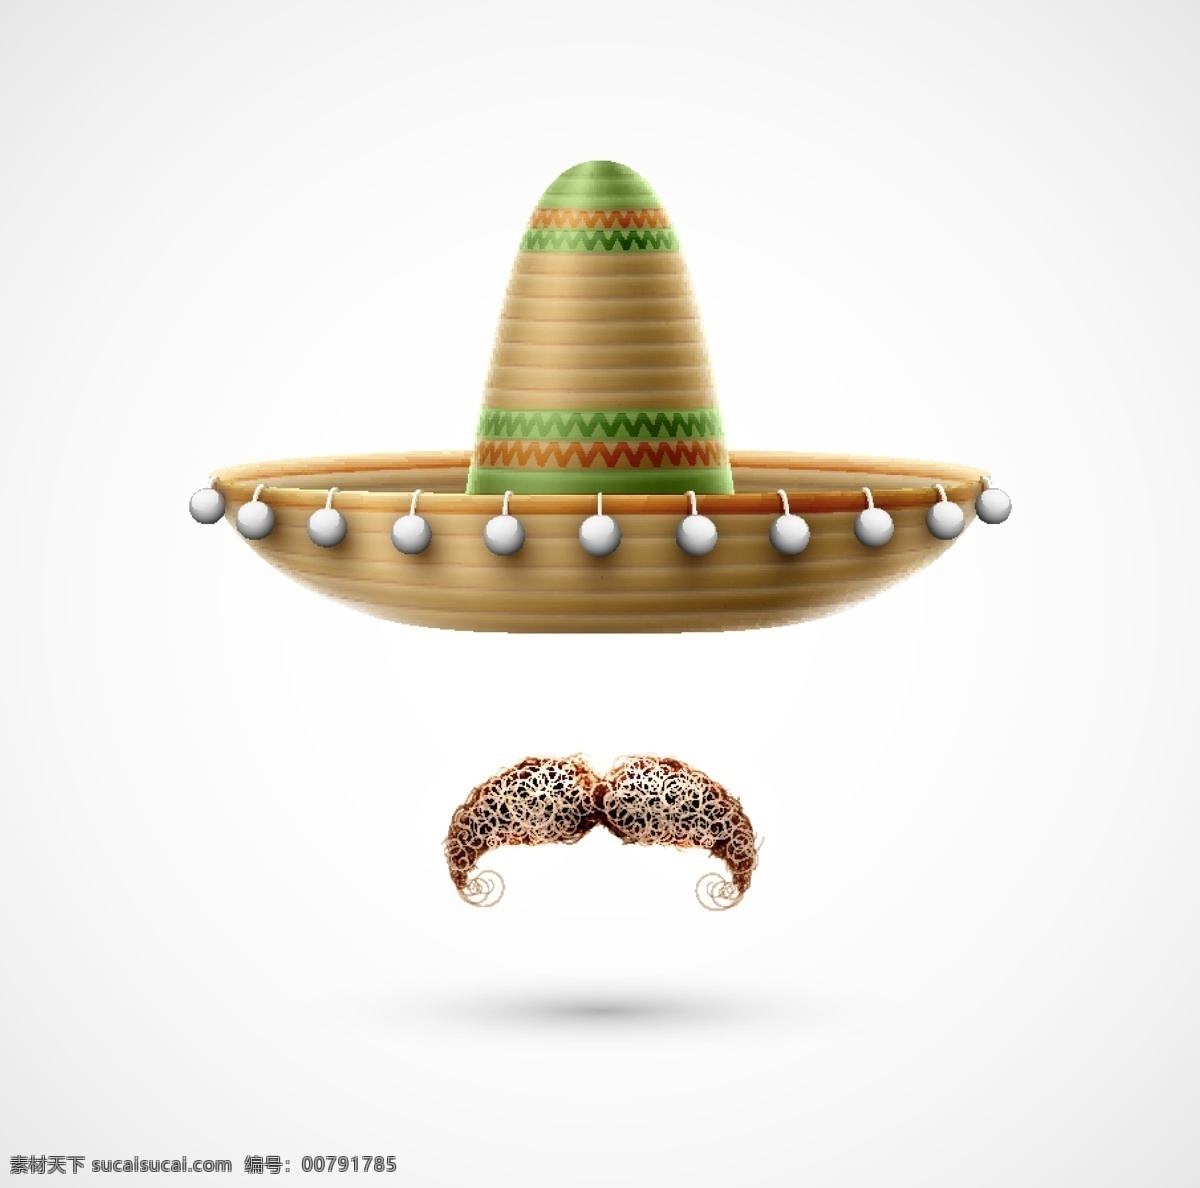 墨西哥 帽子 胡子 背景 墨西哥国旗 矢量图案 边框底纹 背景图案 生活百科 矢量素材 白色